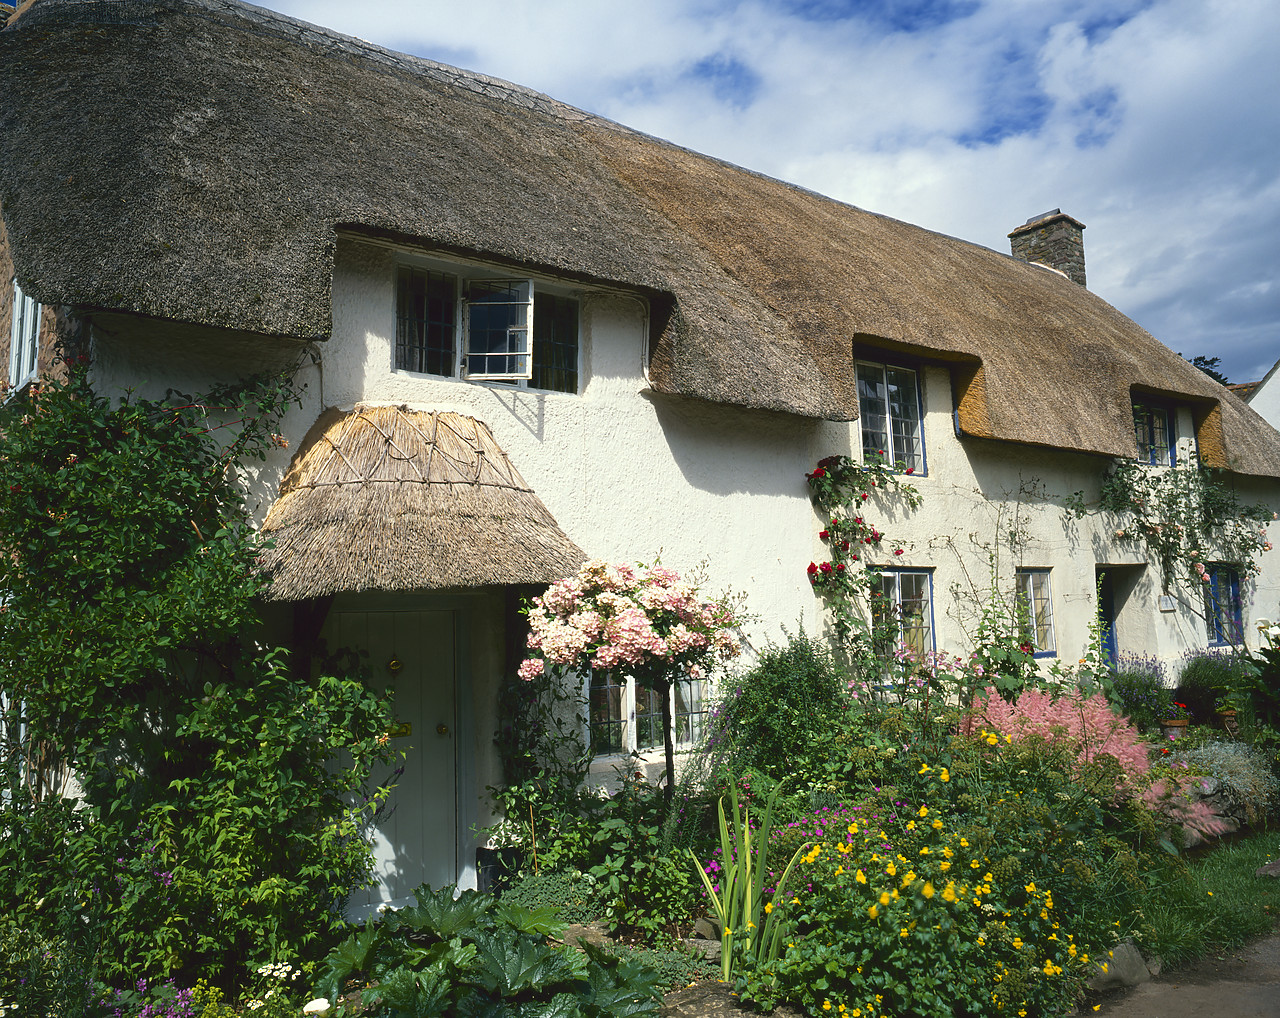 #881416 - Thatched Cottage & Garden, Dunster, Somerset, England